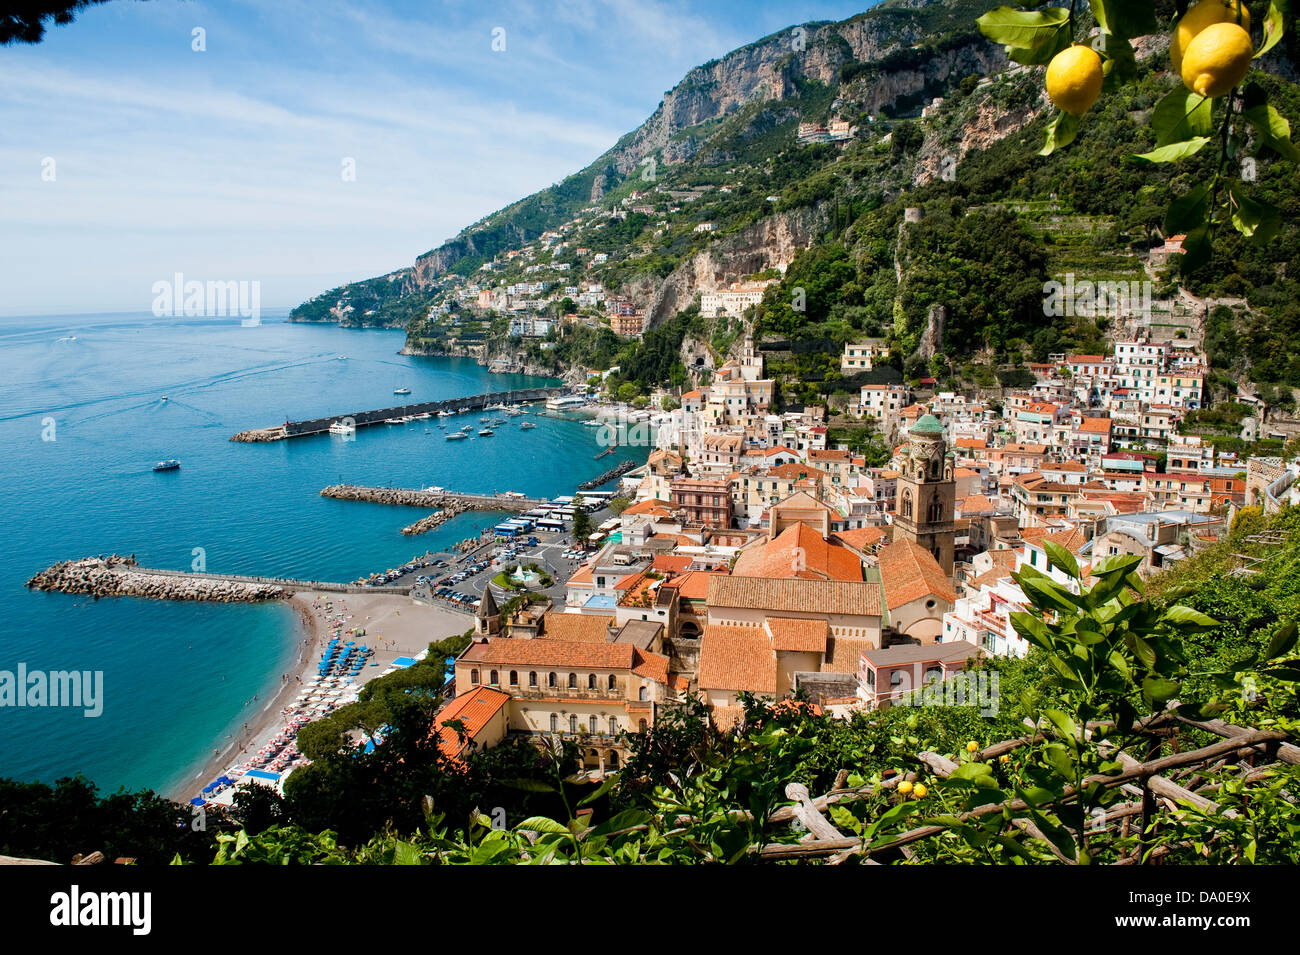 Vue sur le village d'Amalfi, sur la liste du patrimoine mondial de l'Côte d'Amalfi, Italie Banque D'Images